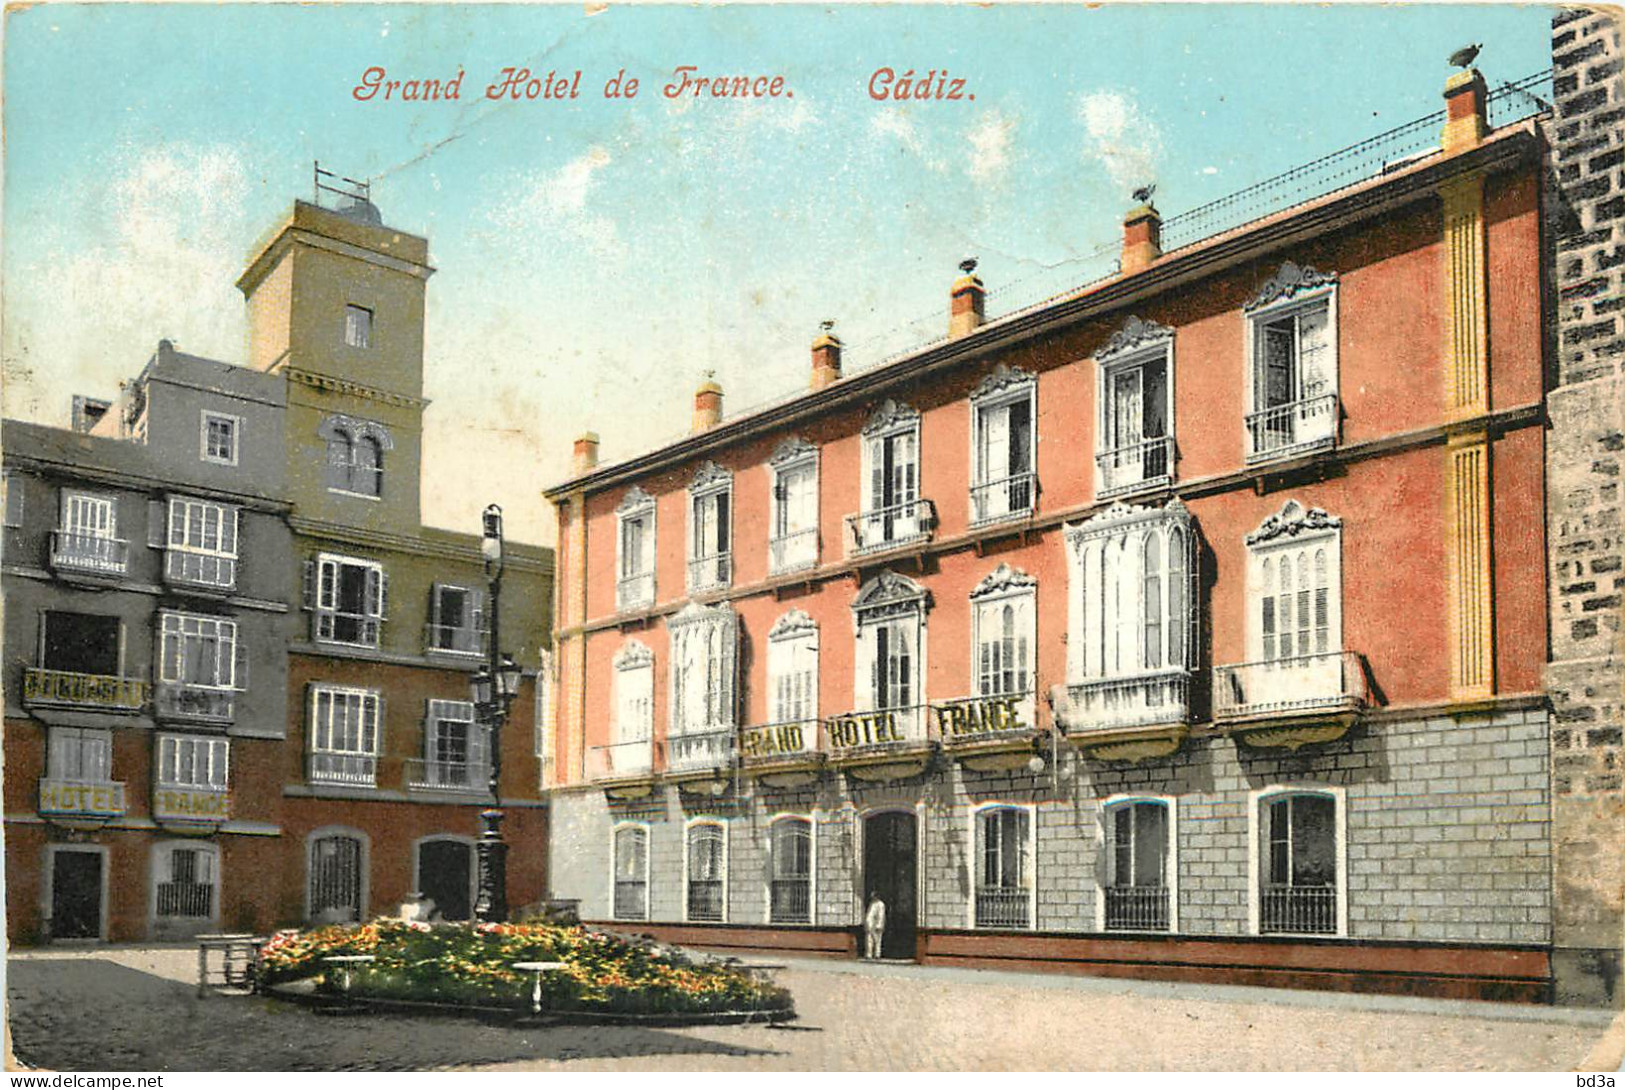 ESPANACADIZ GRAND HOTEL DE FRANCE - Cádiz